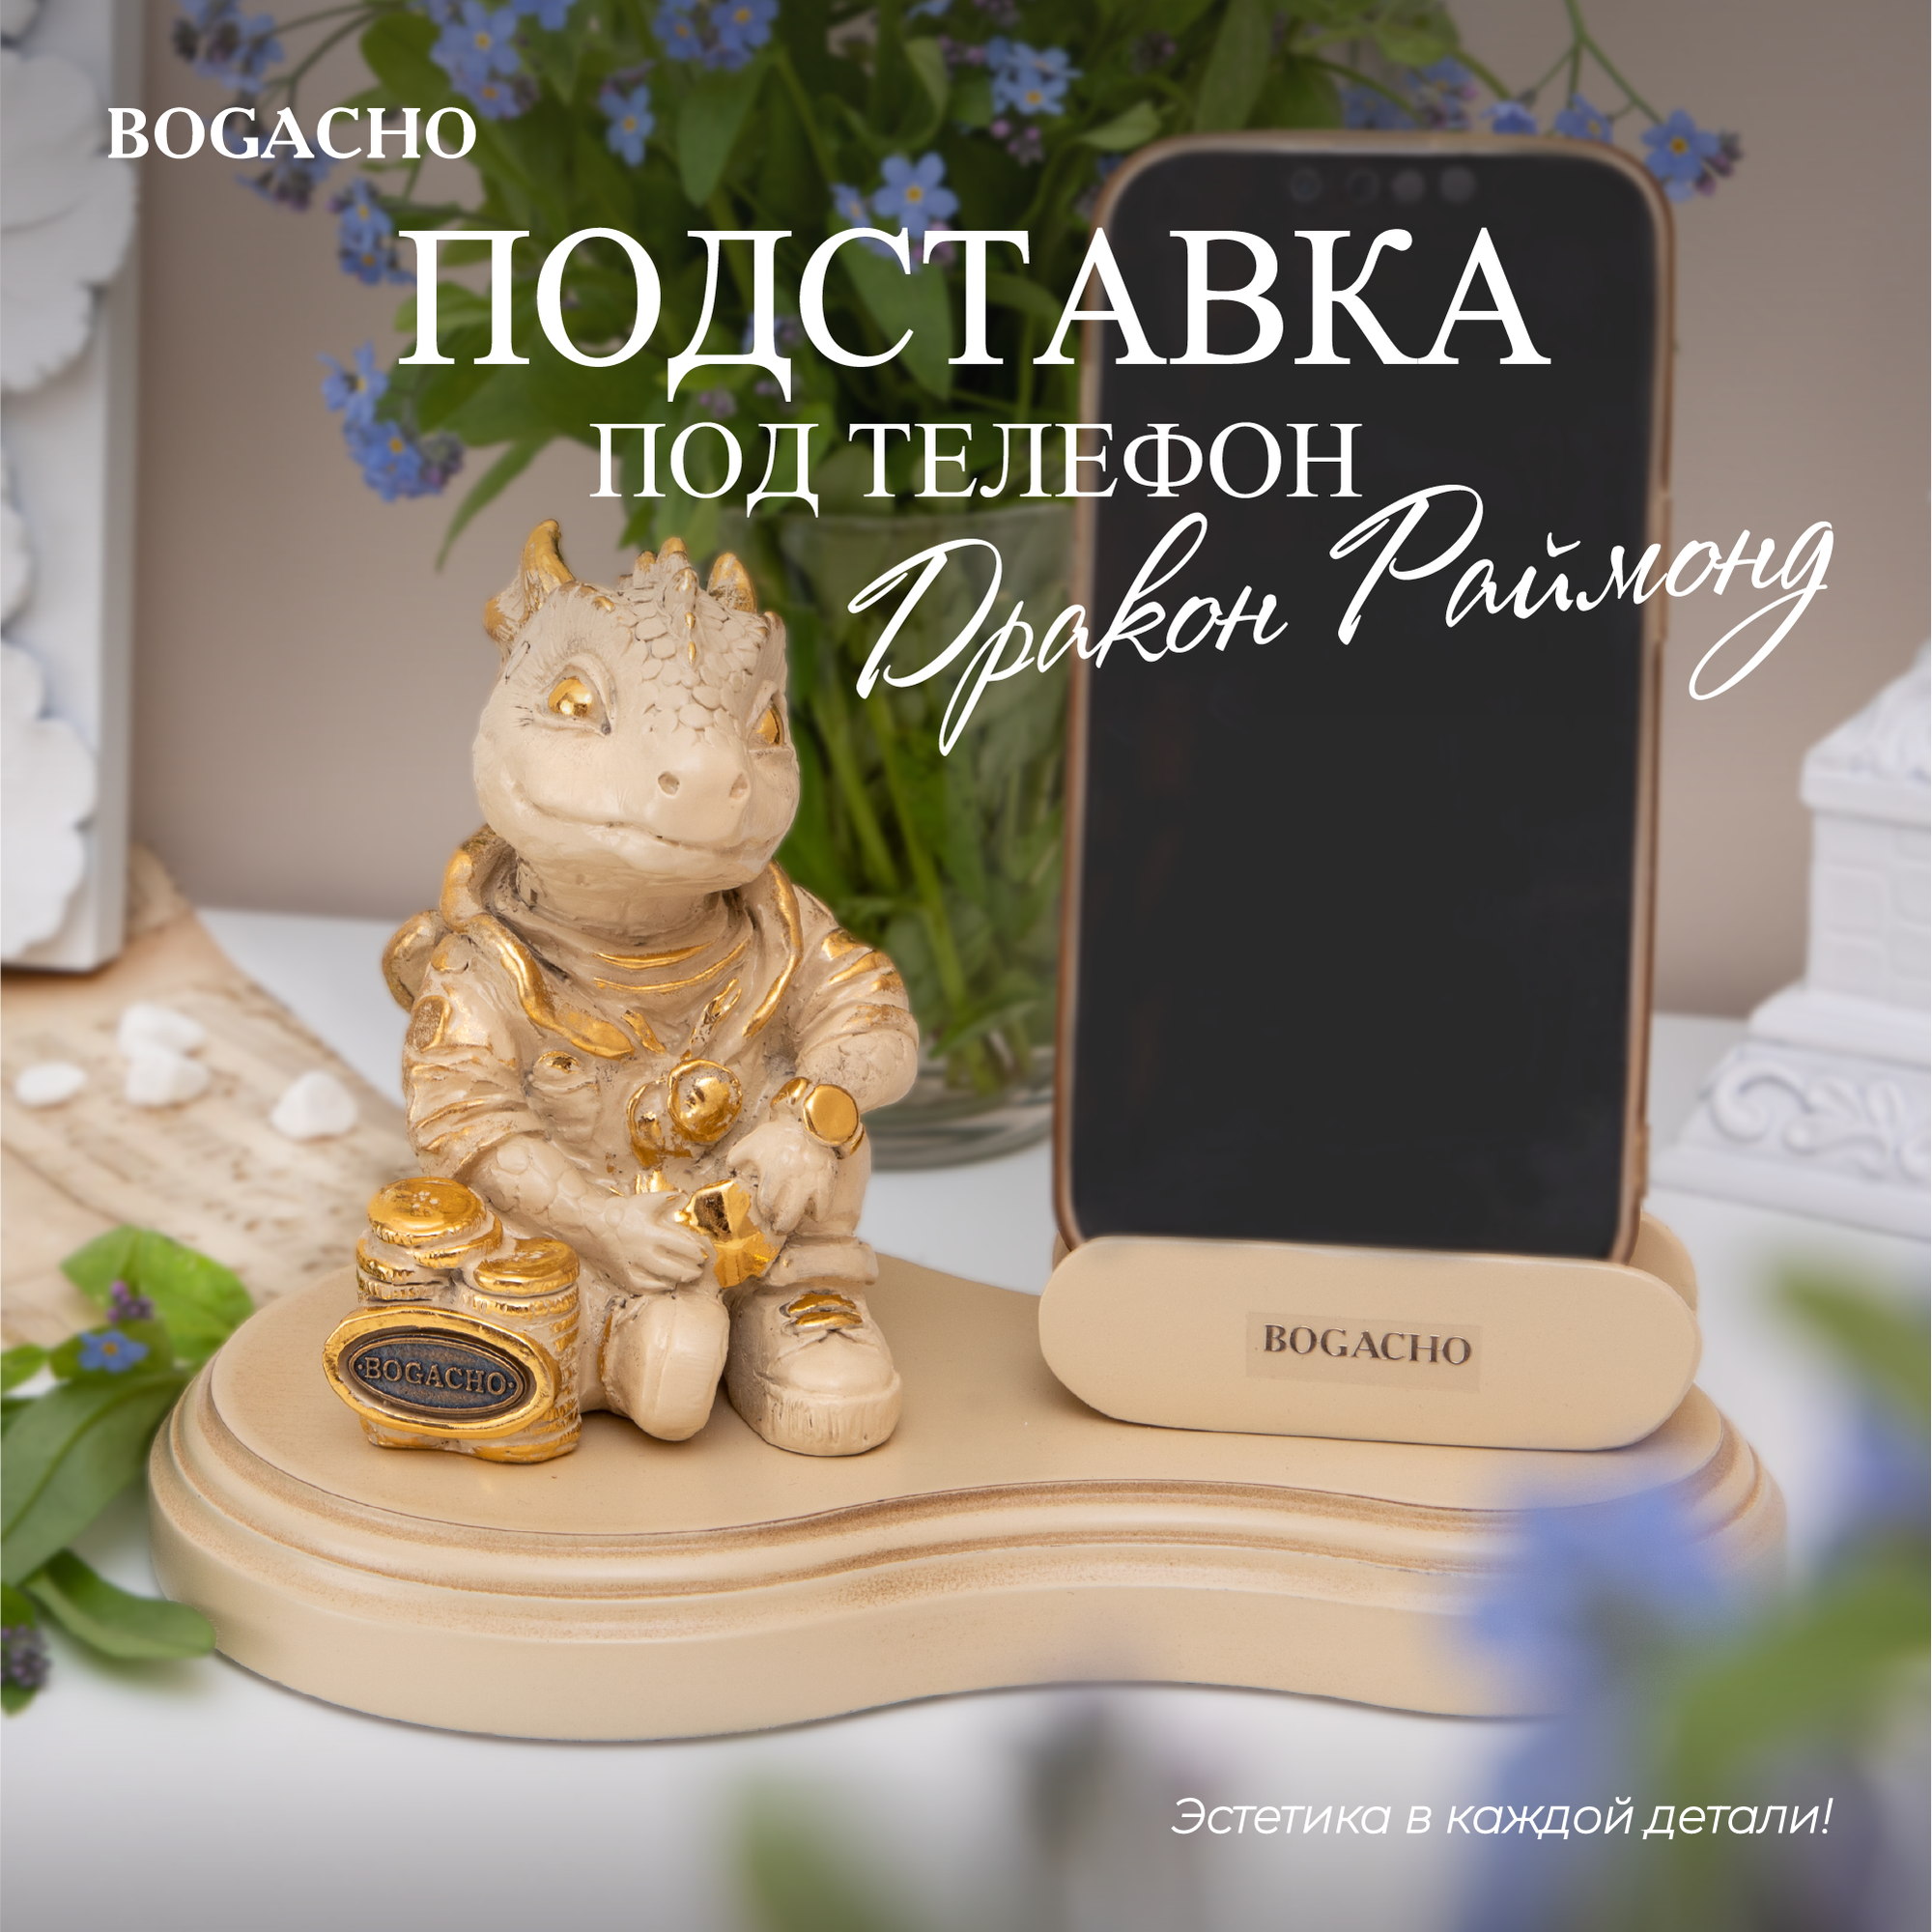 Подставка для телефона Bogacho Дракон Раймонд держатель на стол кремового цвета